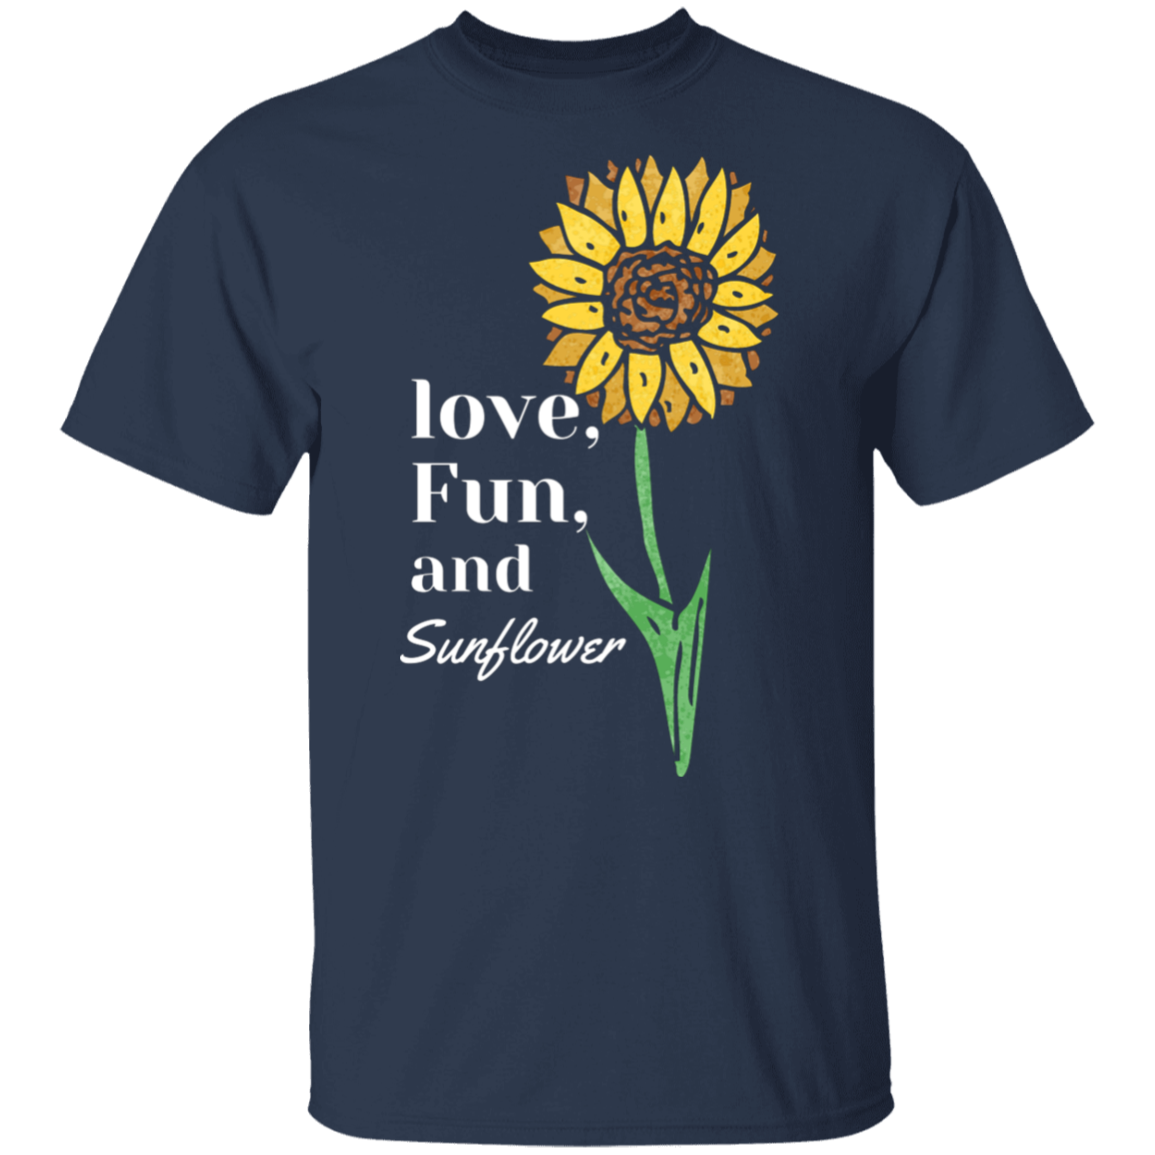 Love, Fun, Sunflower Youth T-shirt